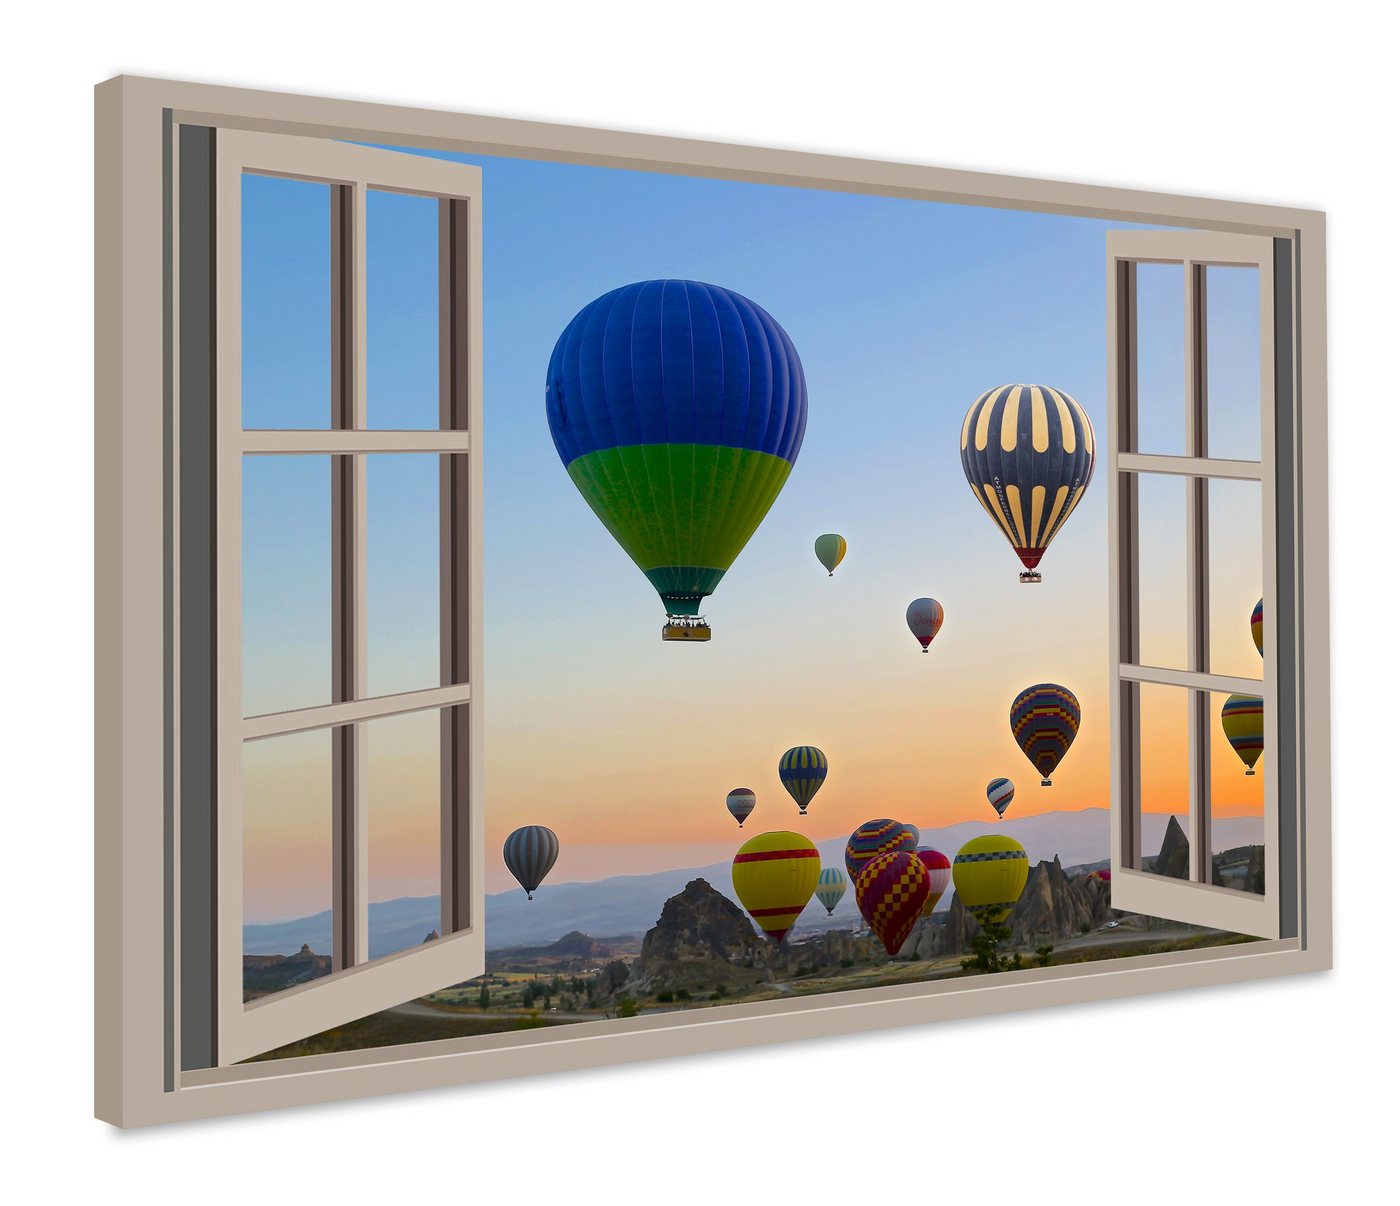 Leinwando Leinwandbild Gemälde / Fensterblick auf Heißluftballons - Moderne Kunst / Wanddekoration fertig zum aufhängen von Leinwando